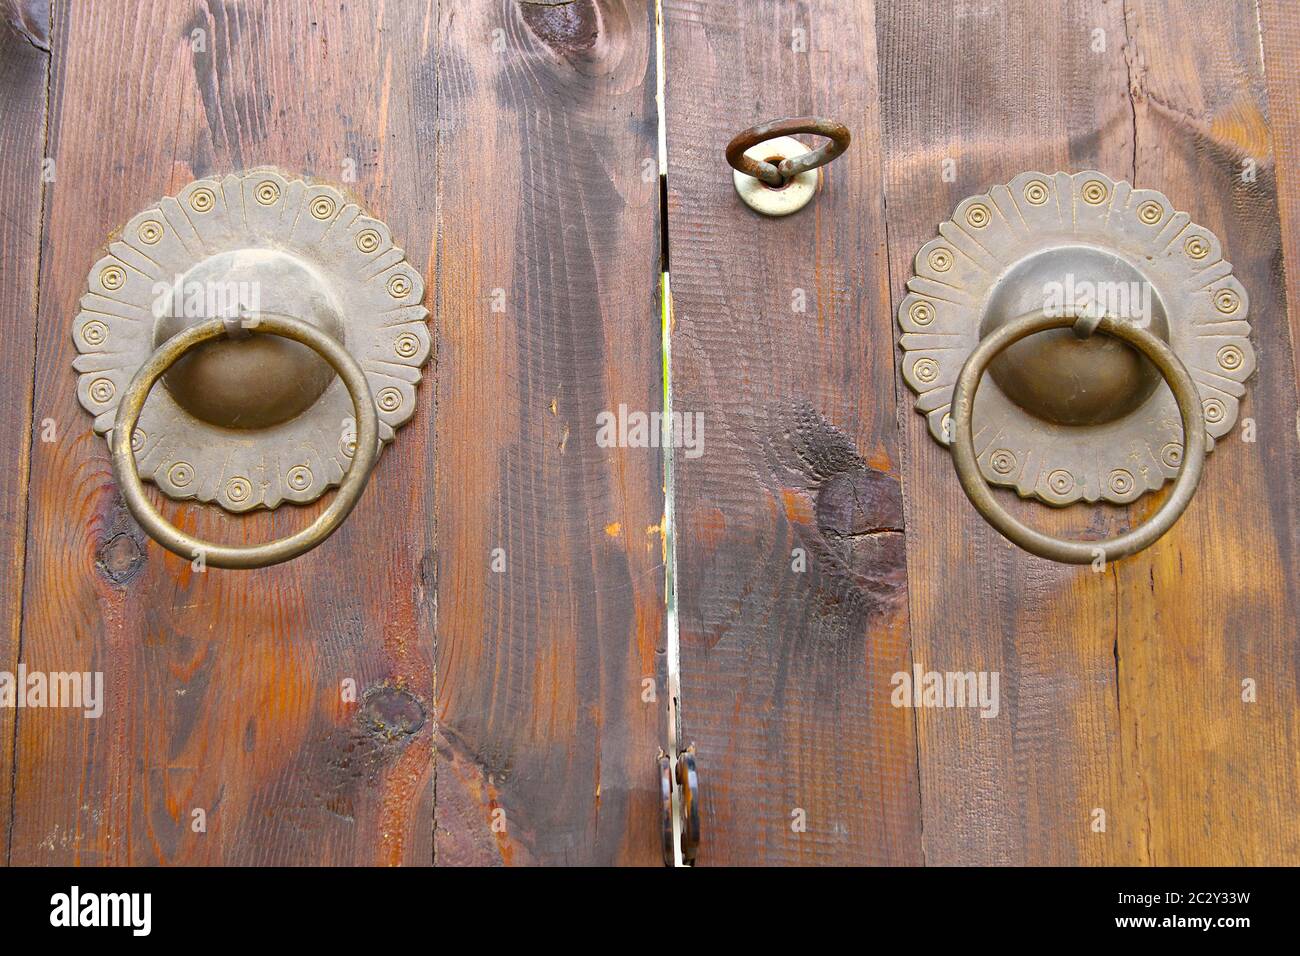 Image montrant des portes doubles en bois avec une paire de knockers stylisés en laiton en forme de fleur. Orientation horizontale. Banque D'Images